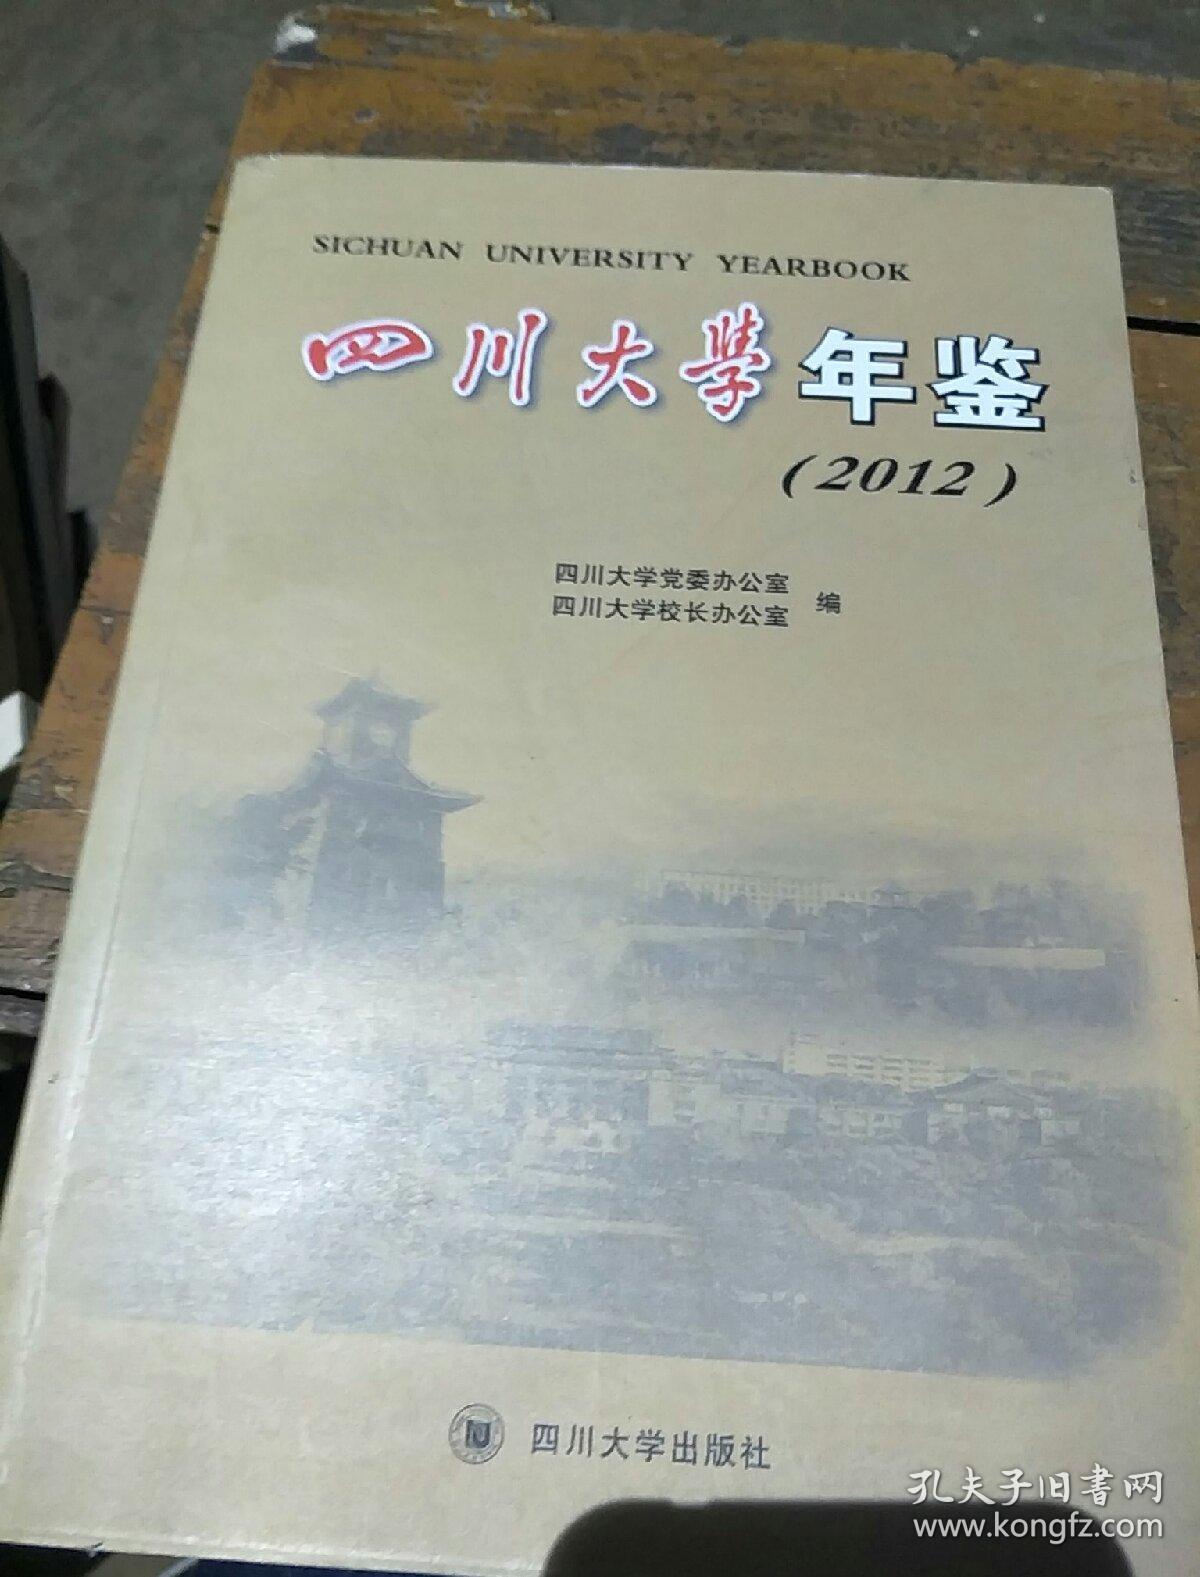 四川大学年鉴. 2012